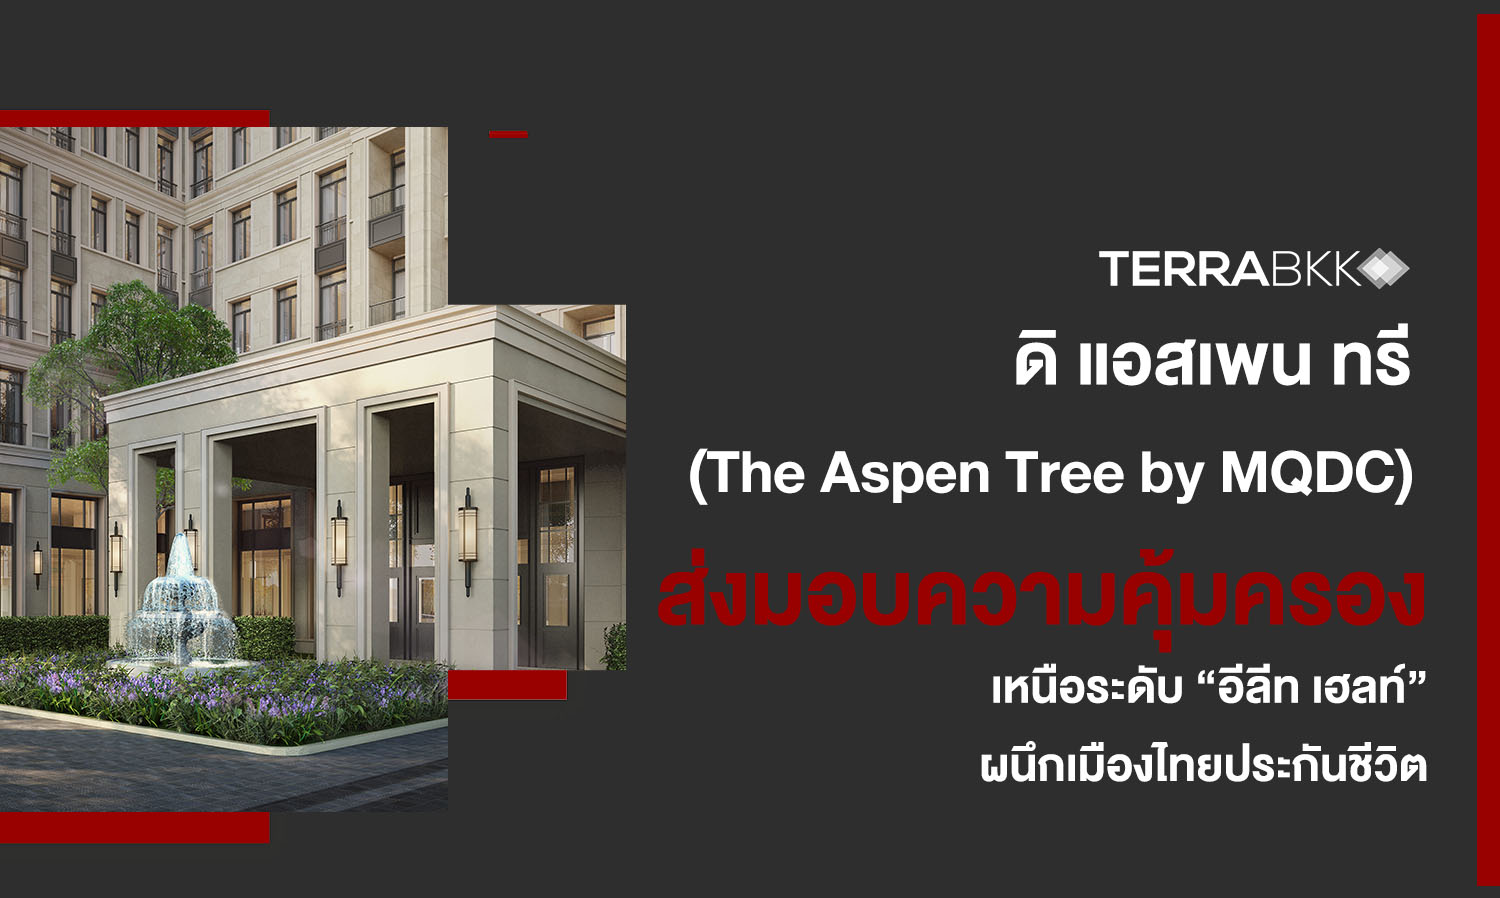 ดิ แอสเพน ทรี (The Aspen Tree by MQDC)  ผนึกเมืองไทยประกันชีวิต  ส่งมอบความคุ้มครองเหนือระดับ “อีลีท เฮลท์”